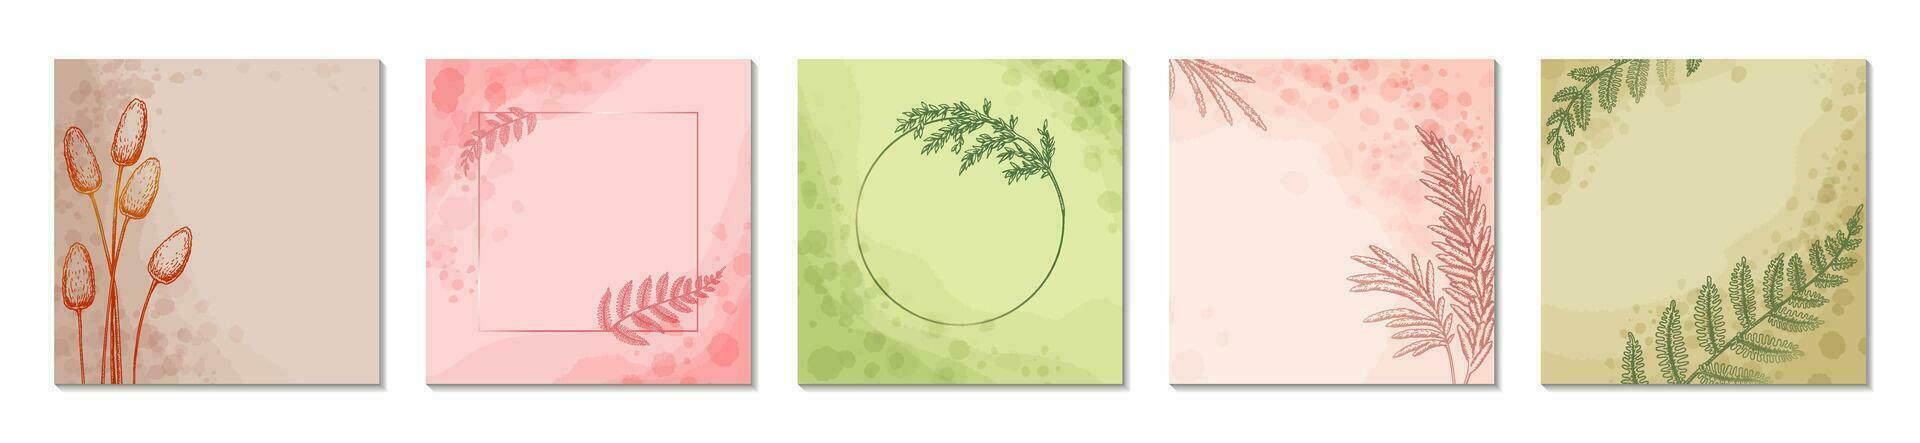 voorjaar zomer loraal sociaal media plein post Sjablonen set. aquarelverf groente, beige, roze, pastel abstract bloem achtergrond en groet kaarten ontwerp. cirkel en plein botanisch fabriek kader vector